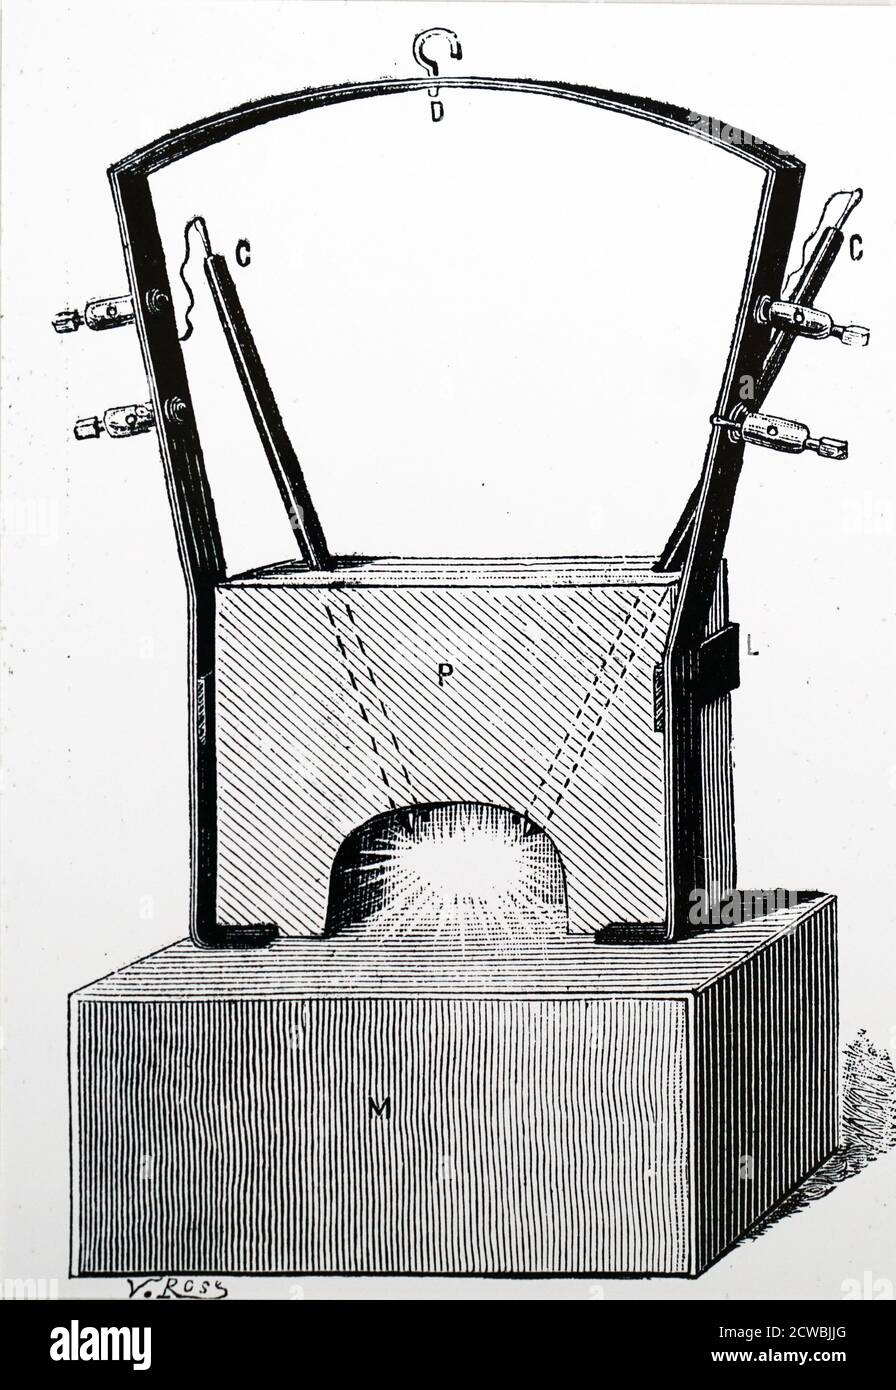 Gravure représentant un bureau suspendu et une lampe-soleil de Clerc. Les tiges en carbone sont visibles de chaque côté du châssis de suspension. Banque D'Images